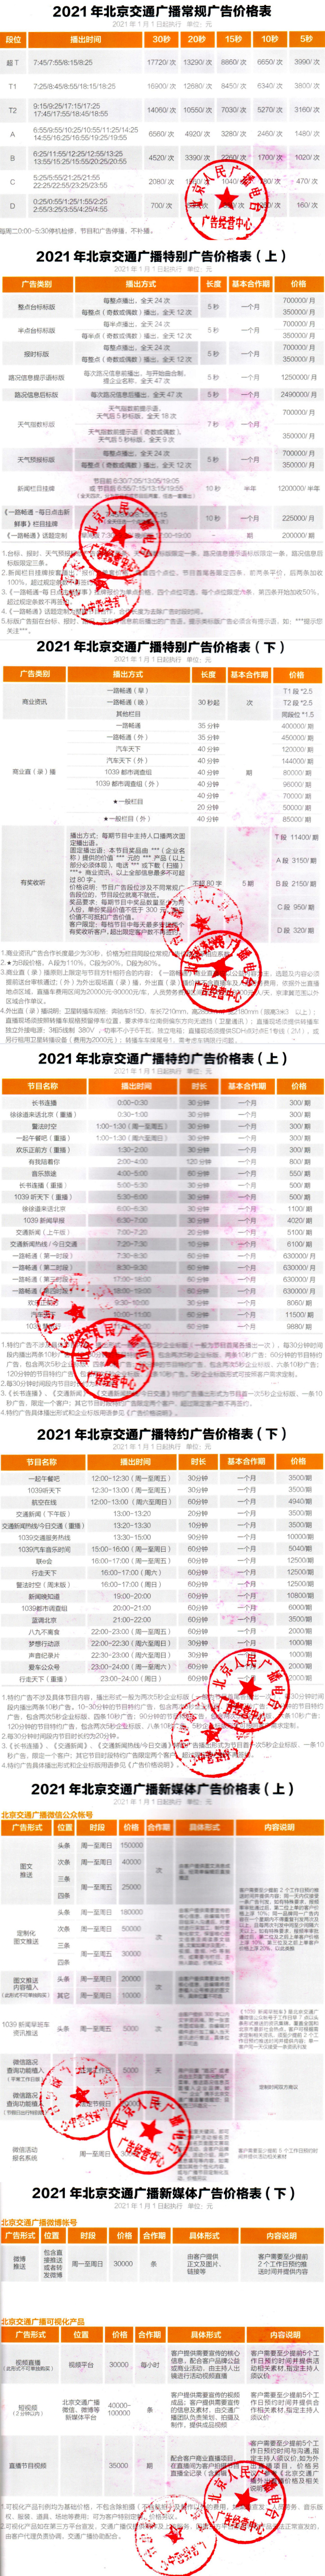 2021北京人民广播电台交通台 FM103.9_FM95.6广告报价表x.jpg